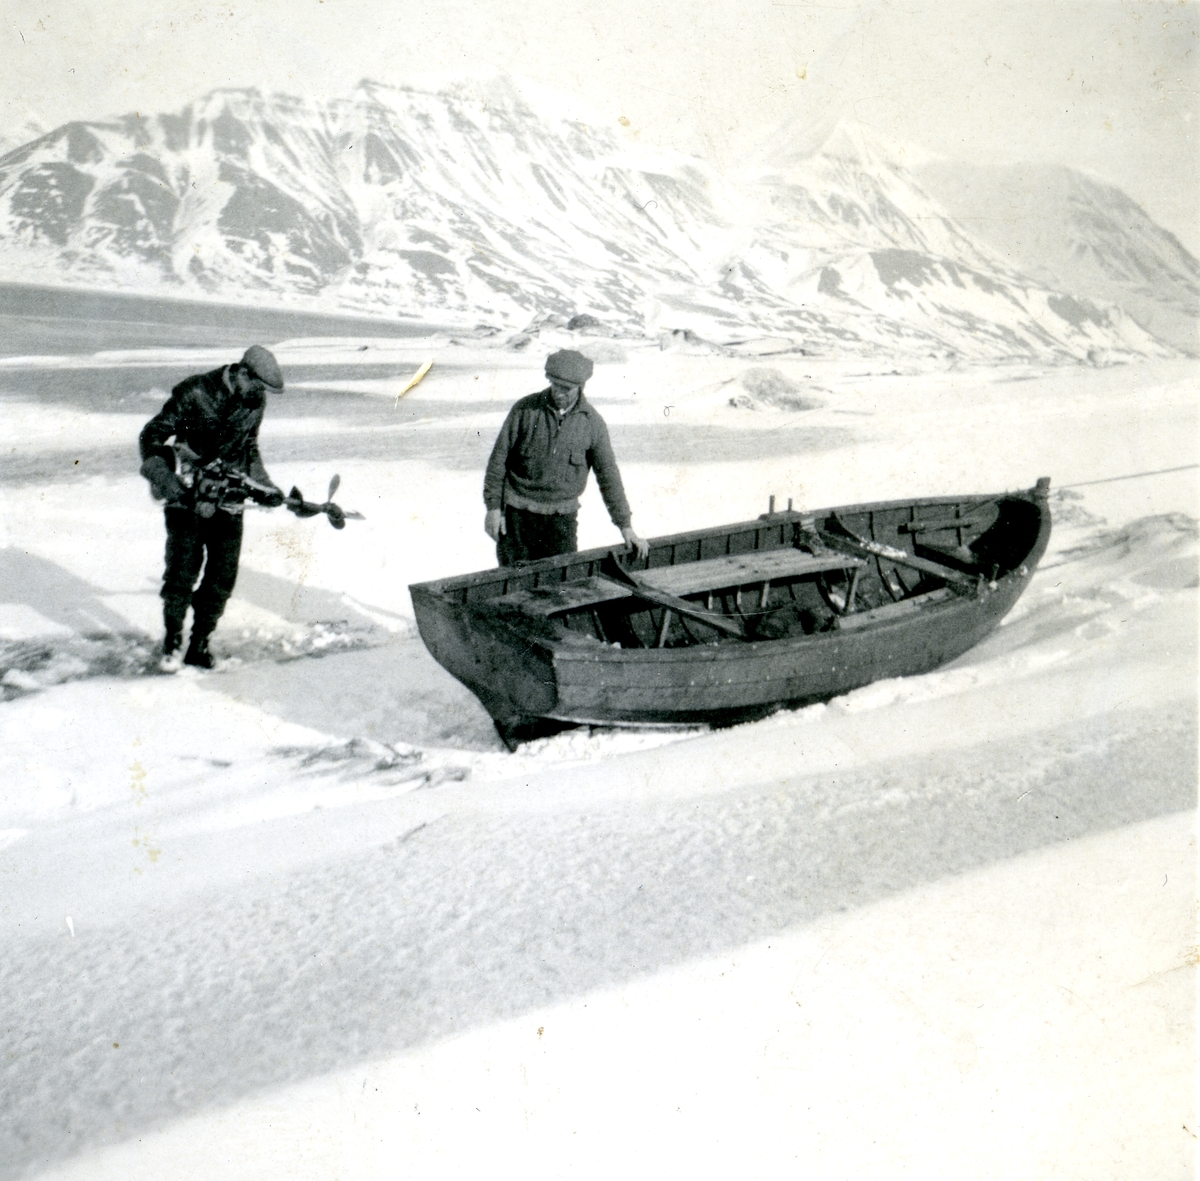 Bilde etter Alfred Eneberg, tatt før krigen Alfred Eneberg var født i Harstad i 1884. Han var murer og ble gift i Bergen. men han dro til Svaldbard rundt 1920. Og her ble han til han døde i 1946. På Svalbard ble han kalt Krestjan, har vi hørt av andre som jobbet sammen med han. Under krigen dro han til England og vervet seg i marinen. Han kom tilbake til Svalbard etter krigen. I 1946 ble han syk og døde, før han rakk og pensjonere seg. Han hadde planer om å dra tilbake til Norge når han ble pensjonist, skulle bygge seg hus på eiendommen til sønnen Halvard som bodde på Grytøya ved Harstad . Han er gravlagt på Trondenes. I 1931 ordnet Alfred arbeid på Svalbard til sin eldste sønn, Halvard Eneberg , som da var 17 år. Både Alfred og Halvard arbeidet i gruva, men når fyrkammeret trengte vedlikehold, ble Alfred rekvirert til å mure opp nytt fyrkammeret, så fagkompetansen sin fikk han også bruke i sitt virke på Svalbard. Fritida ble brukt til fiske og fangst fra hytta han hadde i Bjørndalen. Denne hytta ga han forresten til Røde kors. Alfred ble skilt fra sin kone i Bergen, men han kom heim til Norge hver sommer og da besøkte han slekt og venner. Halvard fikk også ordnet arbeid til kjæresten sin, Haldis Johanna Johansen, født i 1912. Han møtte henne i Harstad mens han besøkte farens slekt der. Halvard var nok en tøffing, hadde fin og stor motorsykkel og penger i lomma, og var en pen kar. Så Haldis ble med til Svalbard , fikk jobb på kjøkkenet. De forlovet seg, og senere ble det giftermål på Svalbard. Haldis ble i 3 år, 3 måneder og 3 dager på Spitsbergen, pleide hun å si . Da hadde Haldis og Halvard lagt seg opp så mye penger at de kjøpte seg gård på Grytøya . De kjøpte farsgården til Haldis av onkelen hennes. Haldis kom heim til Norge i 1937, Halvard ble ca et år til. Da var deres første datter født, og han la Svalbard bak seg. Men hele livet snakket han om tida på Spitsbergen . Halvard døde i 1979. Haldis var også flink å fortelle fra tida på Spitsbergen . Haldis levde til 2006.